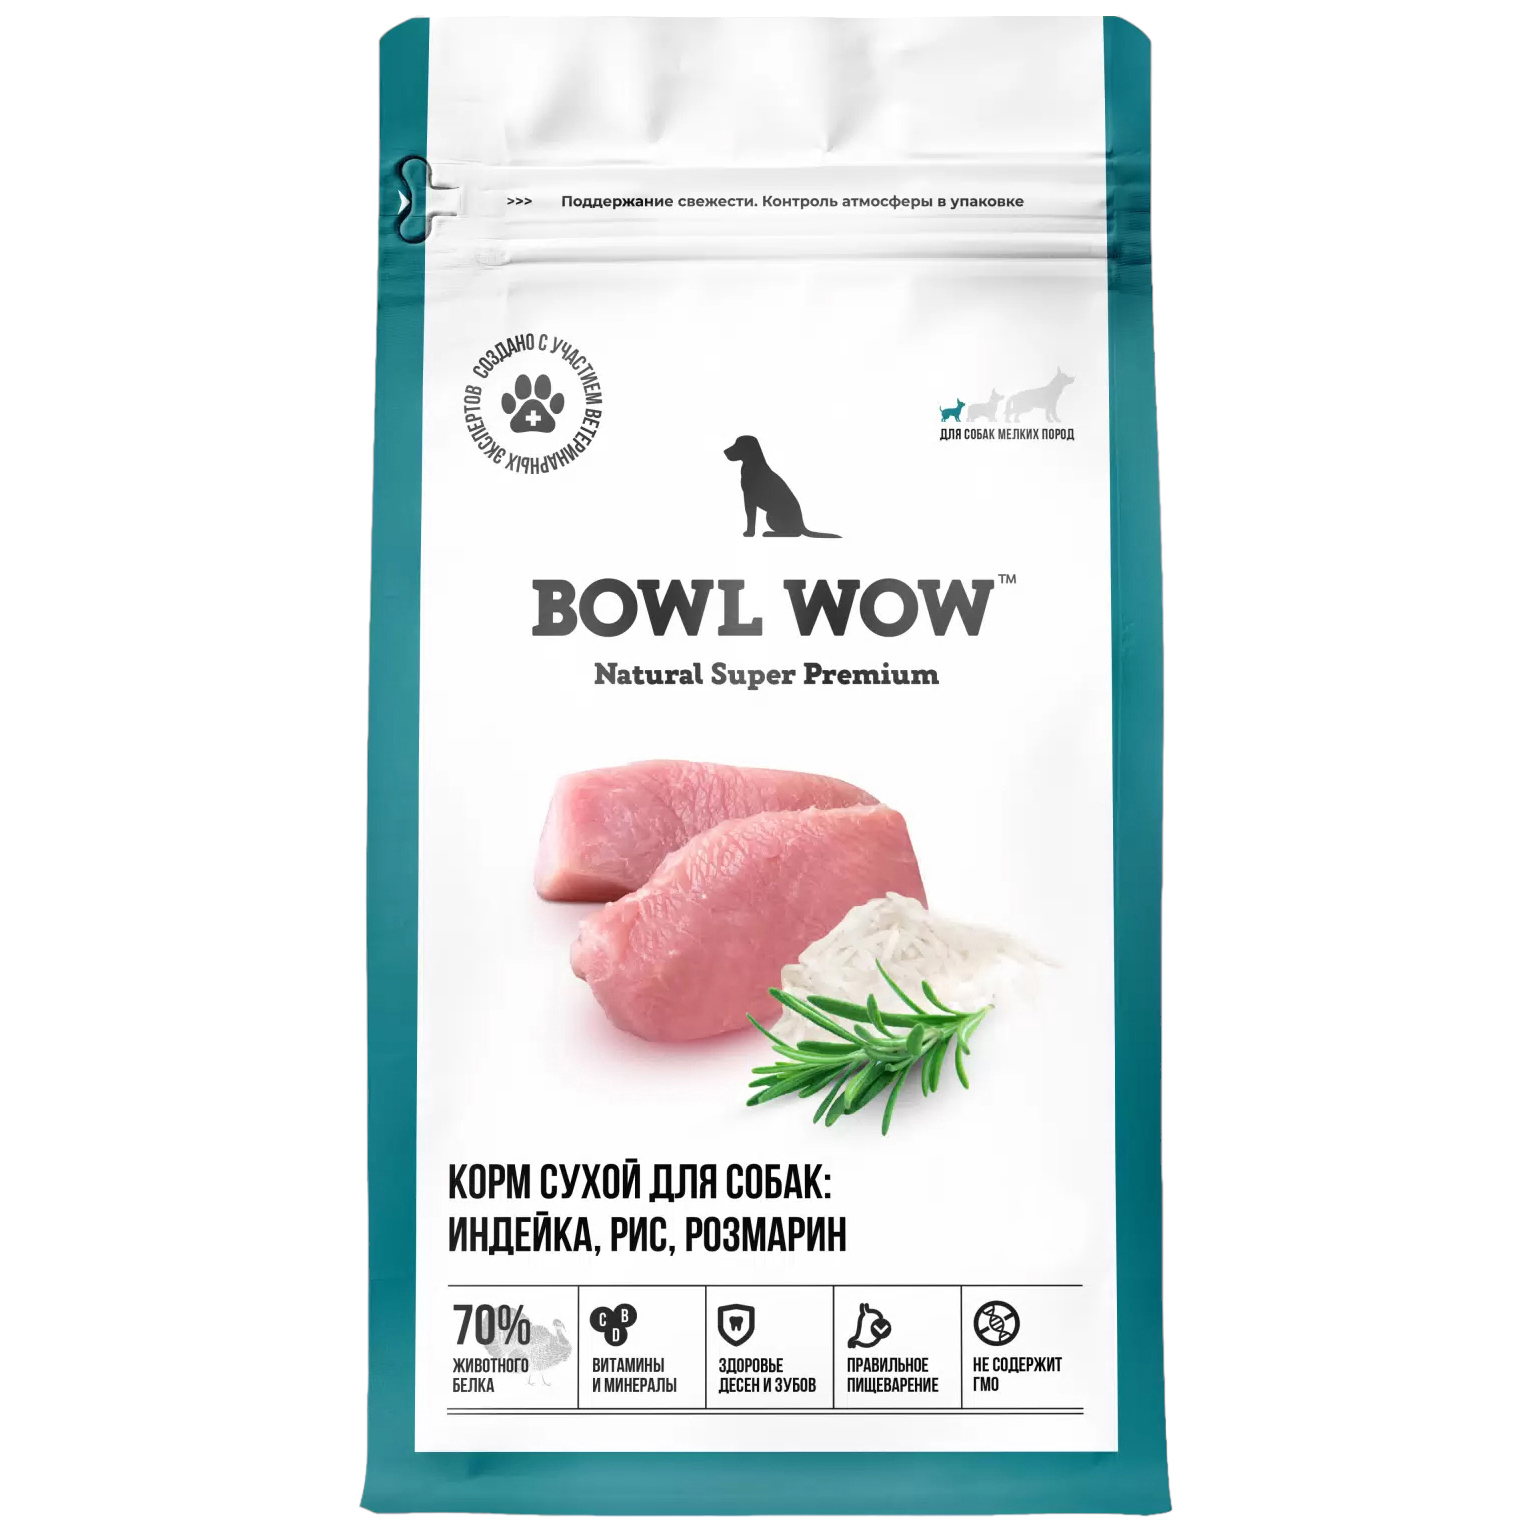 Сухой корм для собак BOWL WOW, для мелких пород, с индейкой, рисом и розмарином, 5 кг